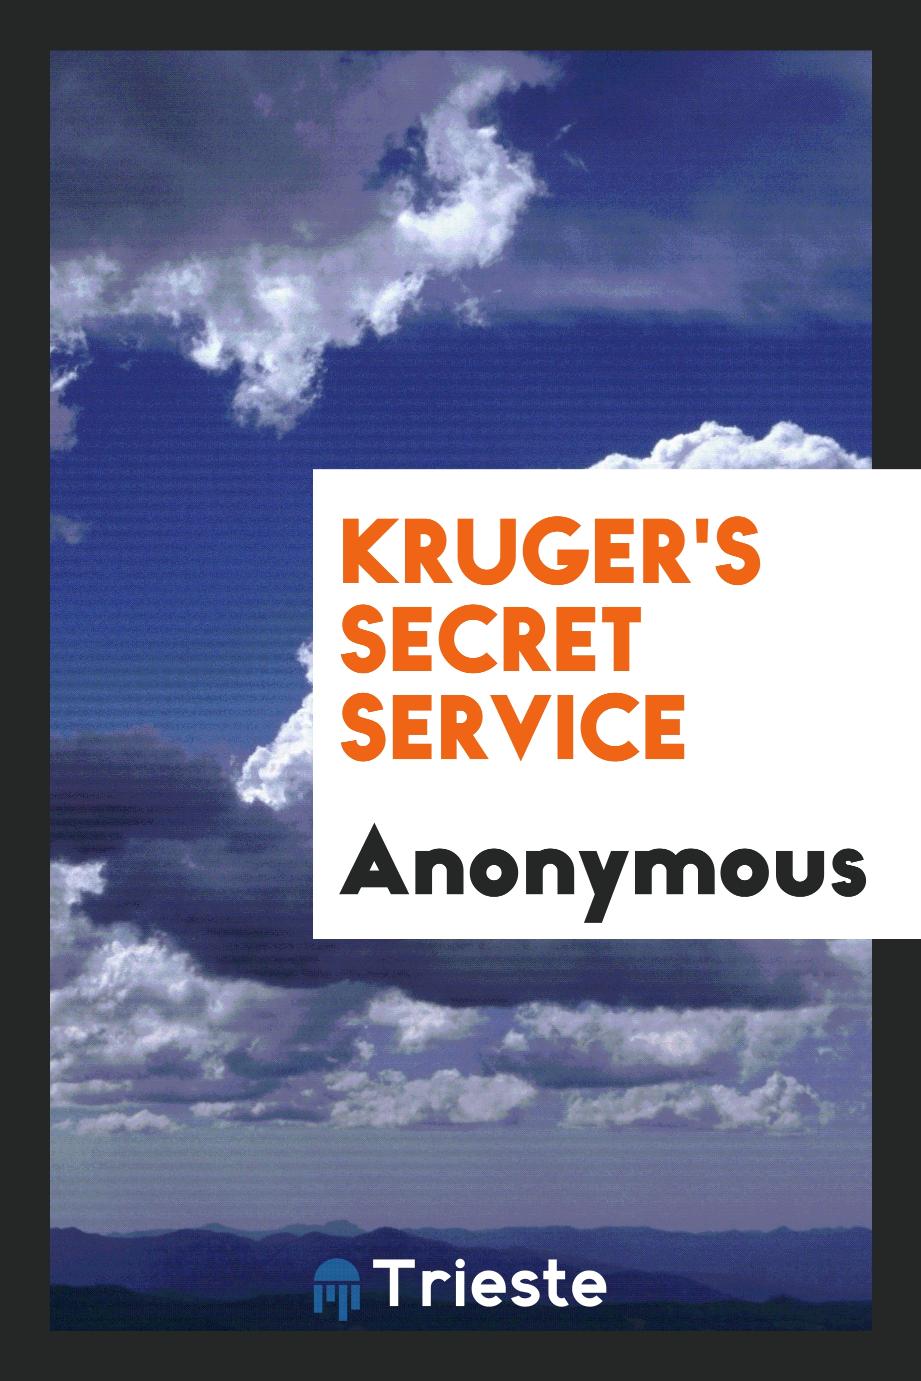 Kruger's secret service